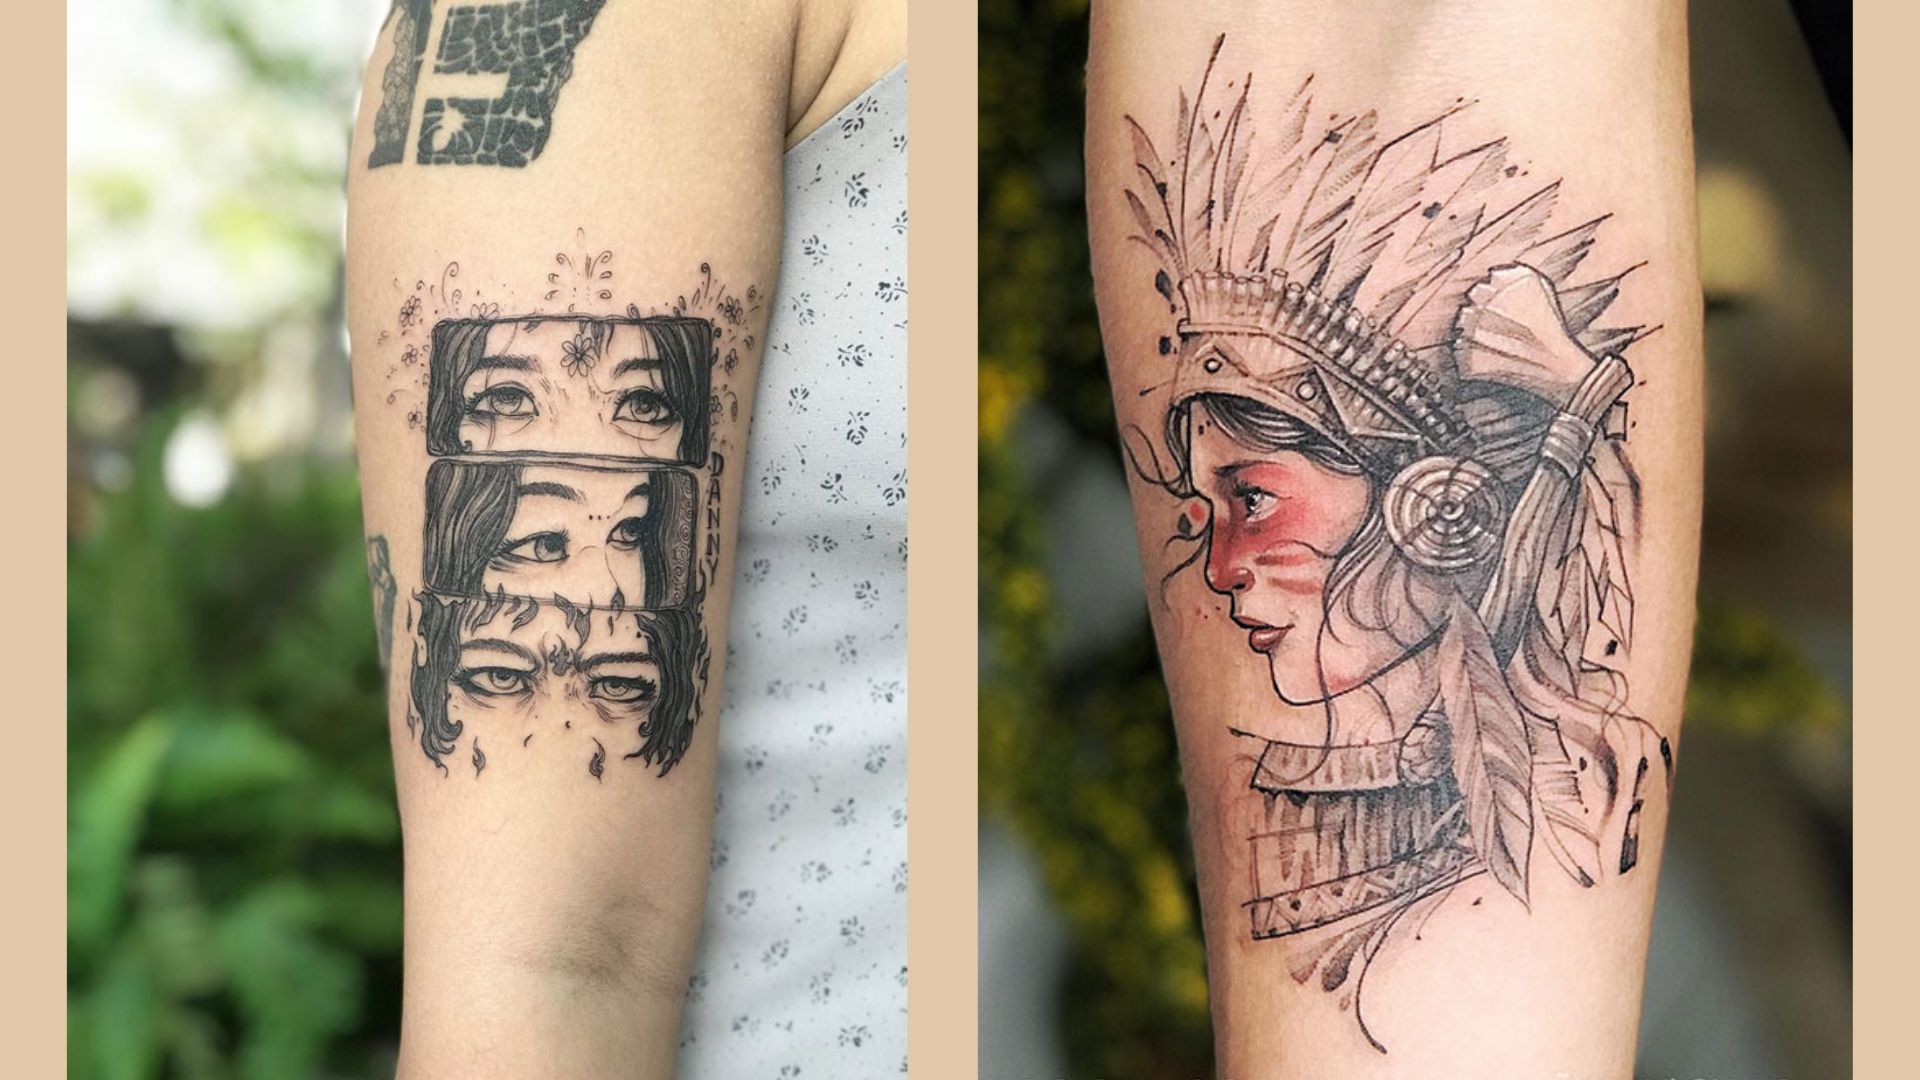 Lament Tattoo - Địa chỉ xăm hình nghệ thuật đẹp Đà Nẵng